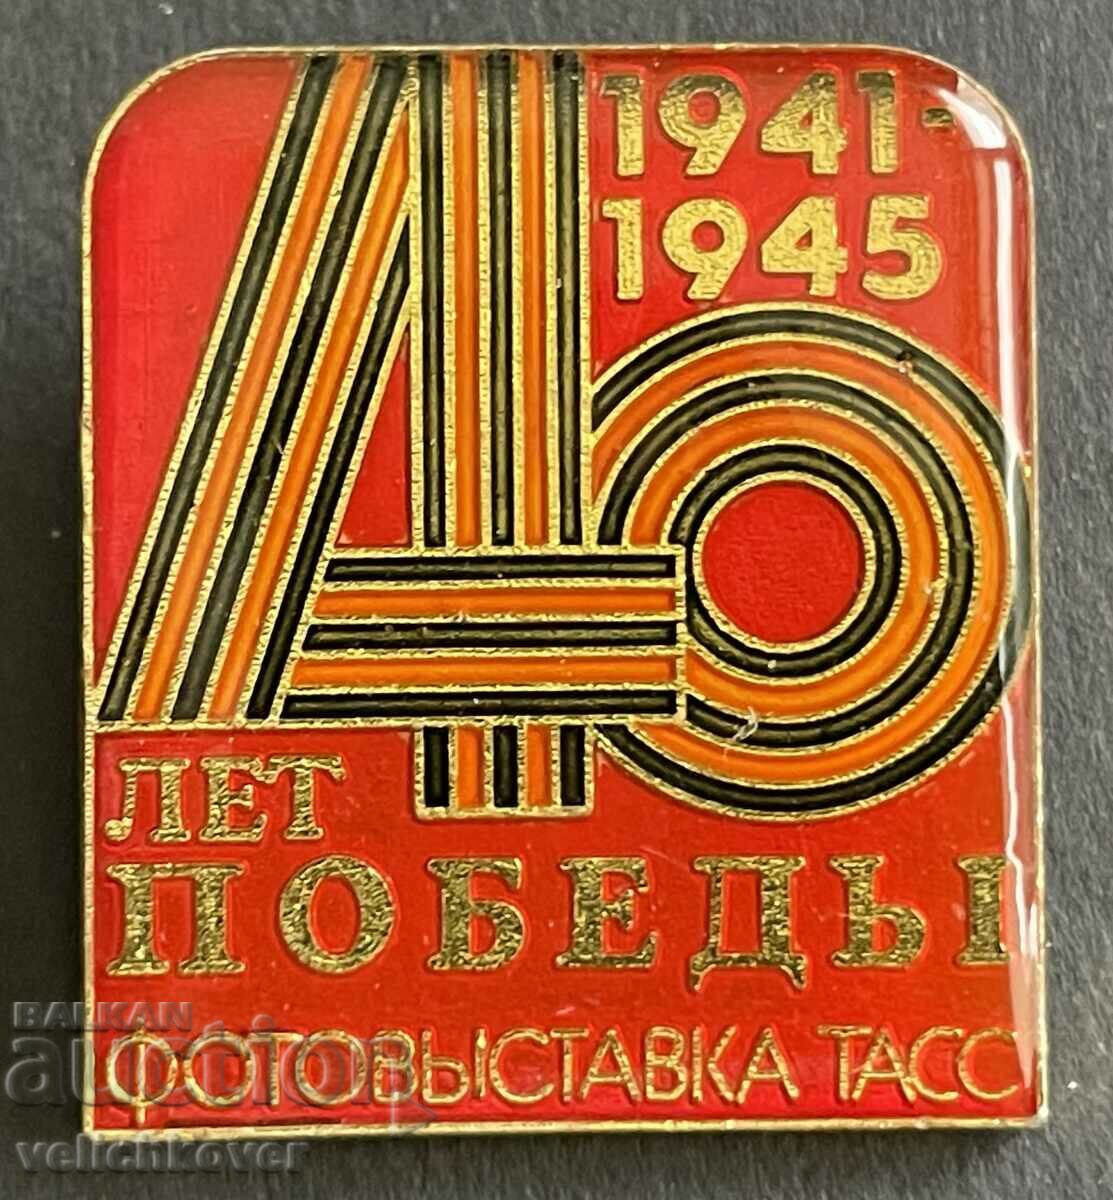 37550 Έκθεση φωτογραφίας ΕΣΣΔ σημάδι 40 χρόνια. Από τη νίκη του Παγκοσμίου Κυπέλλου του 1985.